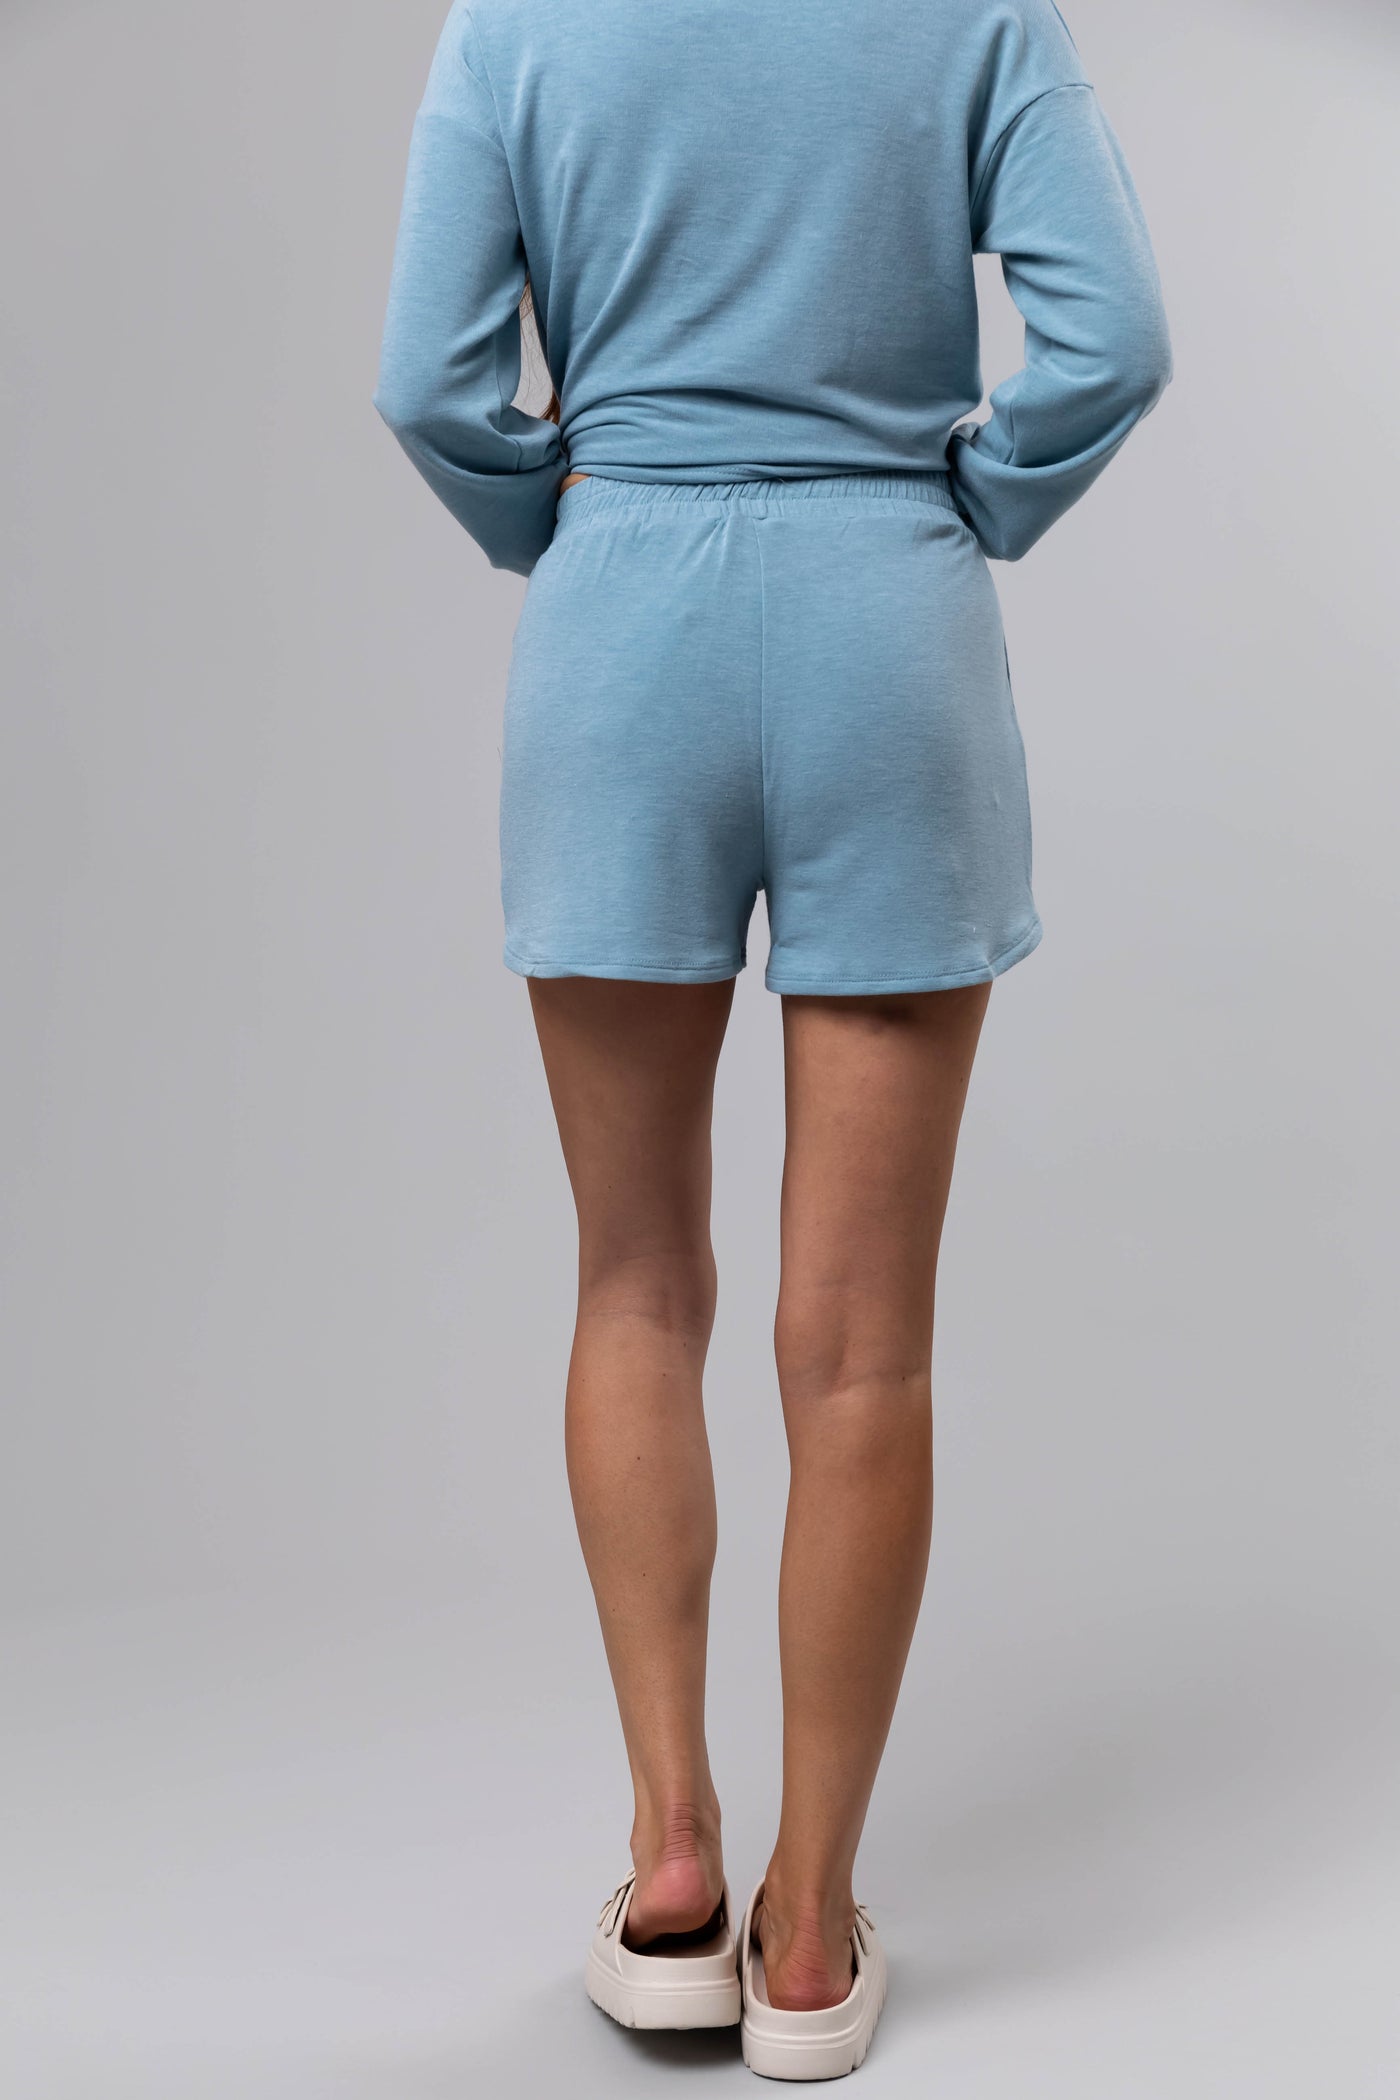 Heathered Blue Soft Knit Elastic Shorts